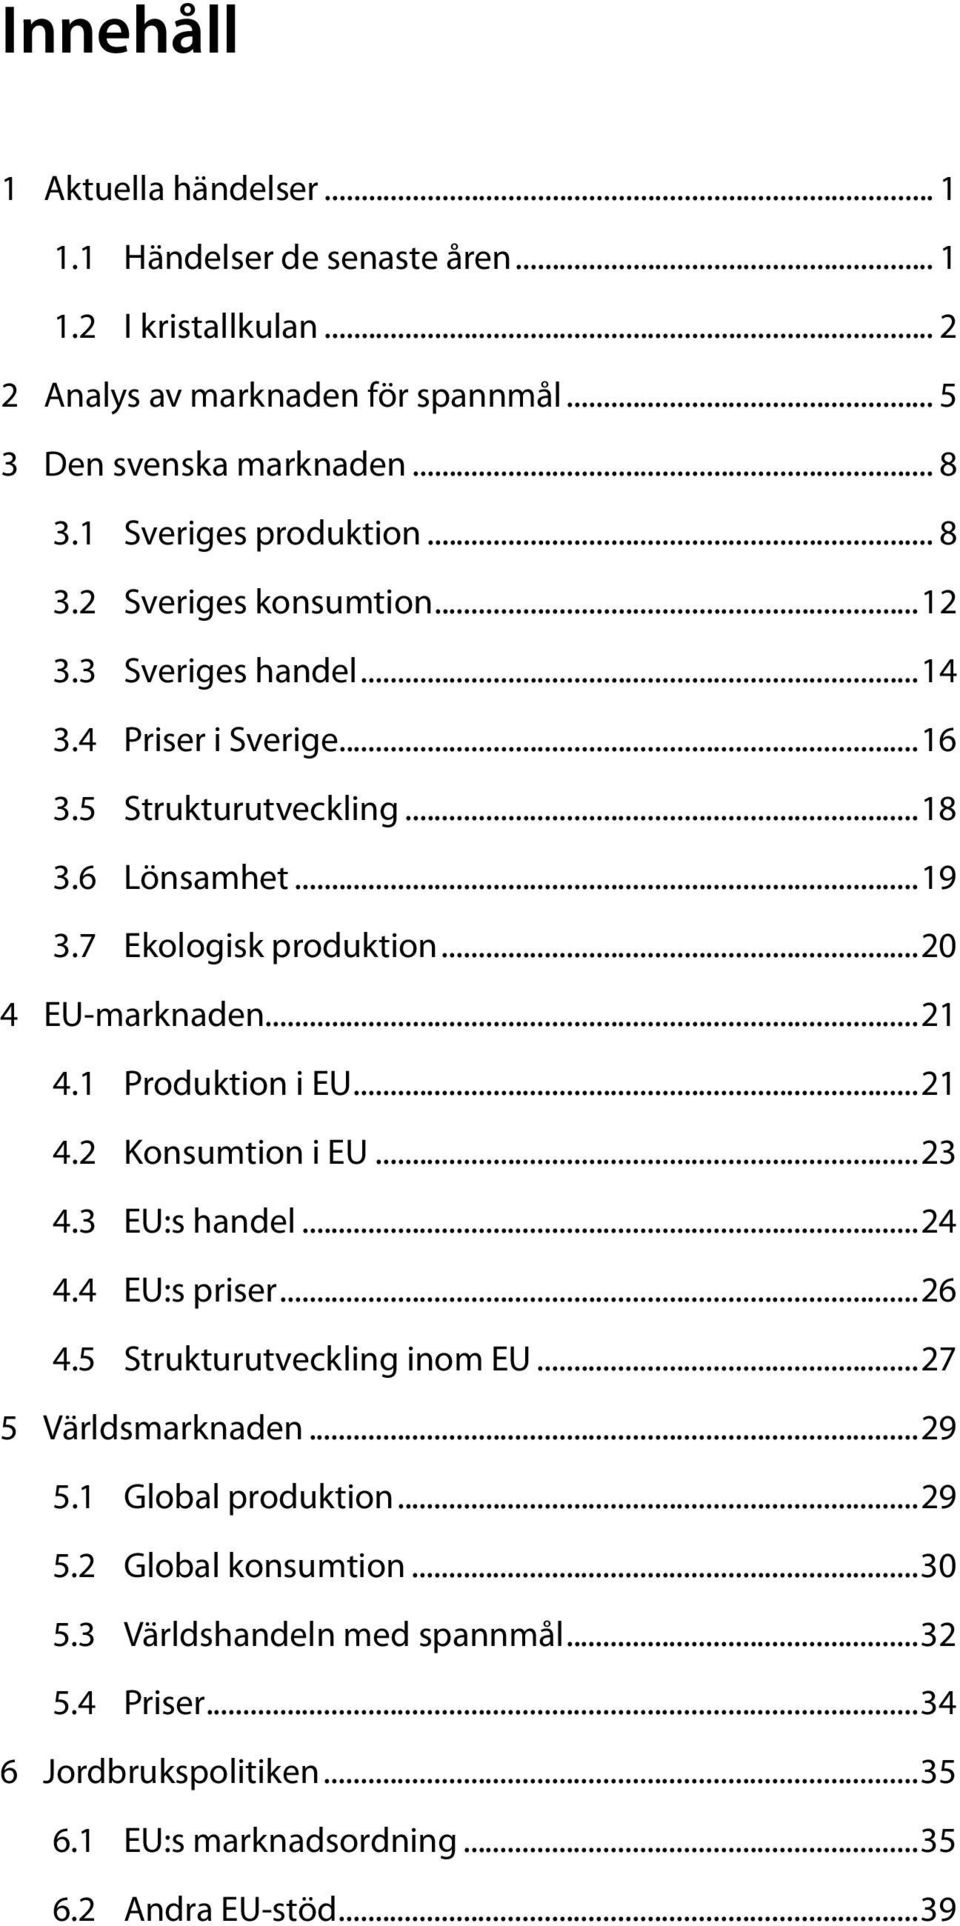 7 Ekologisk produktion...20 4 EU-marknaden...21 4.1 Produktion i EU...21 4.2 Konsumtion i EU...23 4.3 EU:s handel...24 4.4 EU:s priser...26 4.5 Strukturutveckling inom EU.